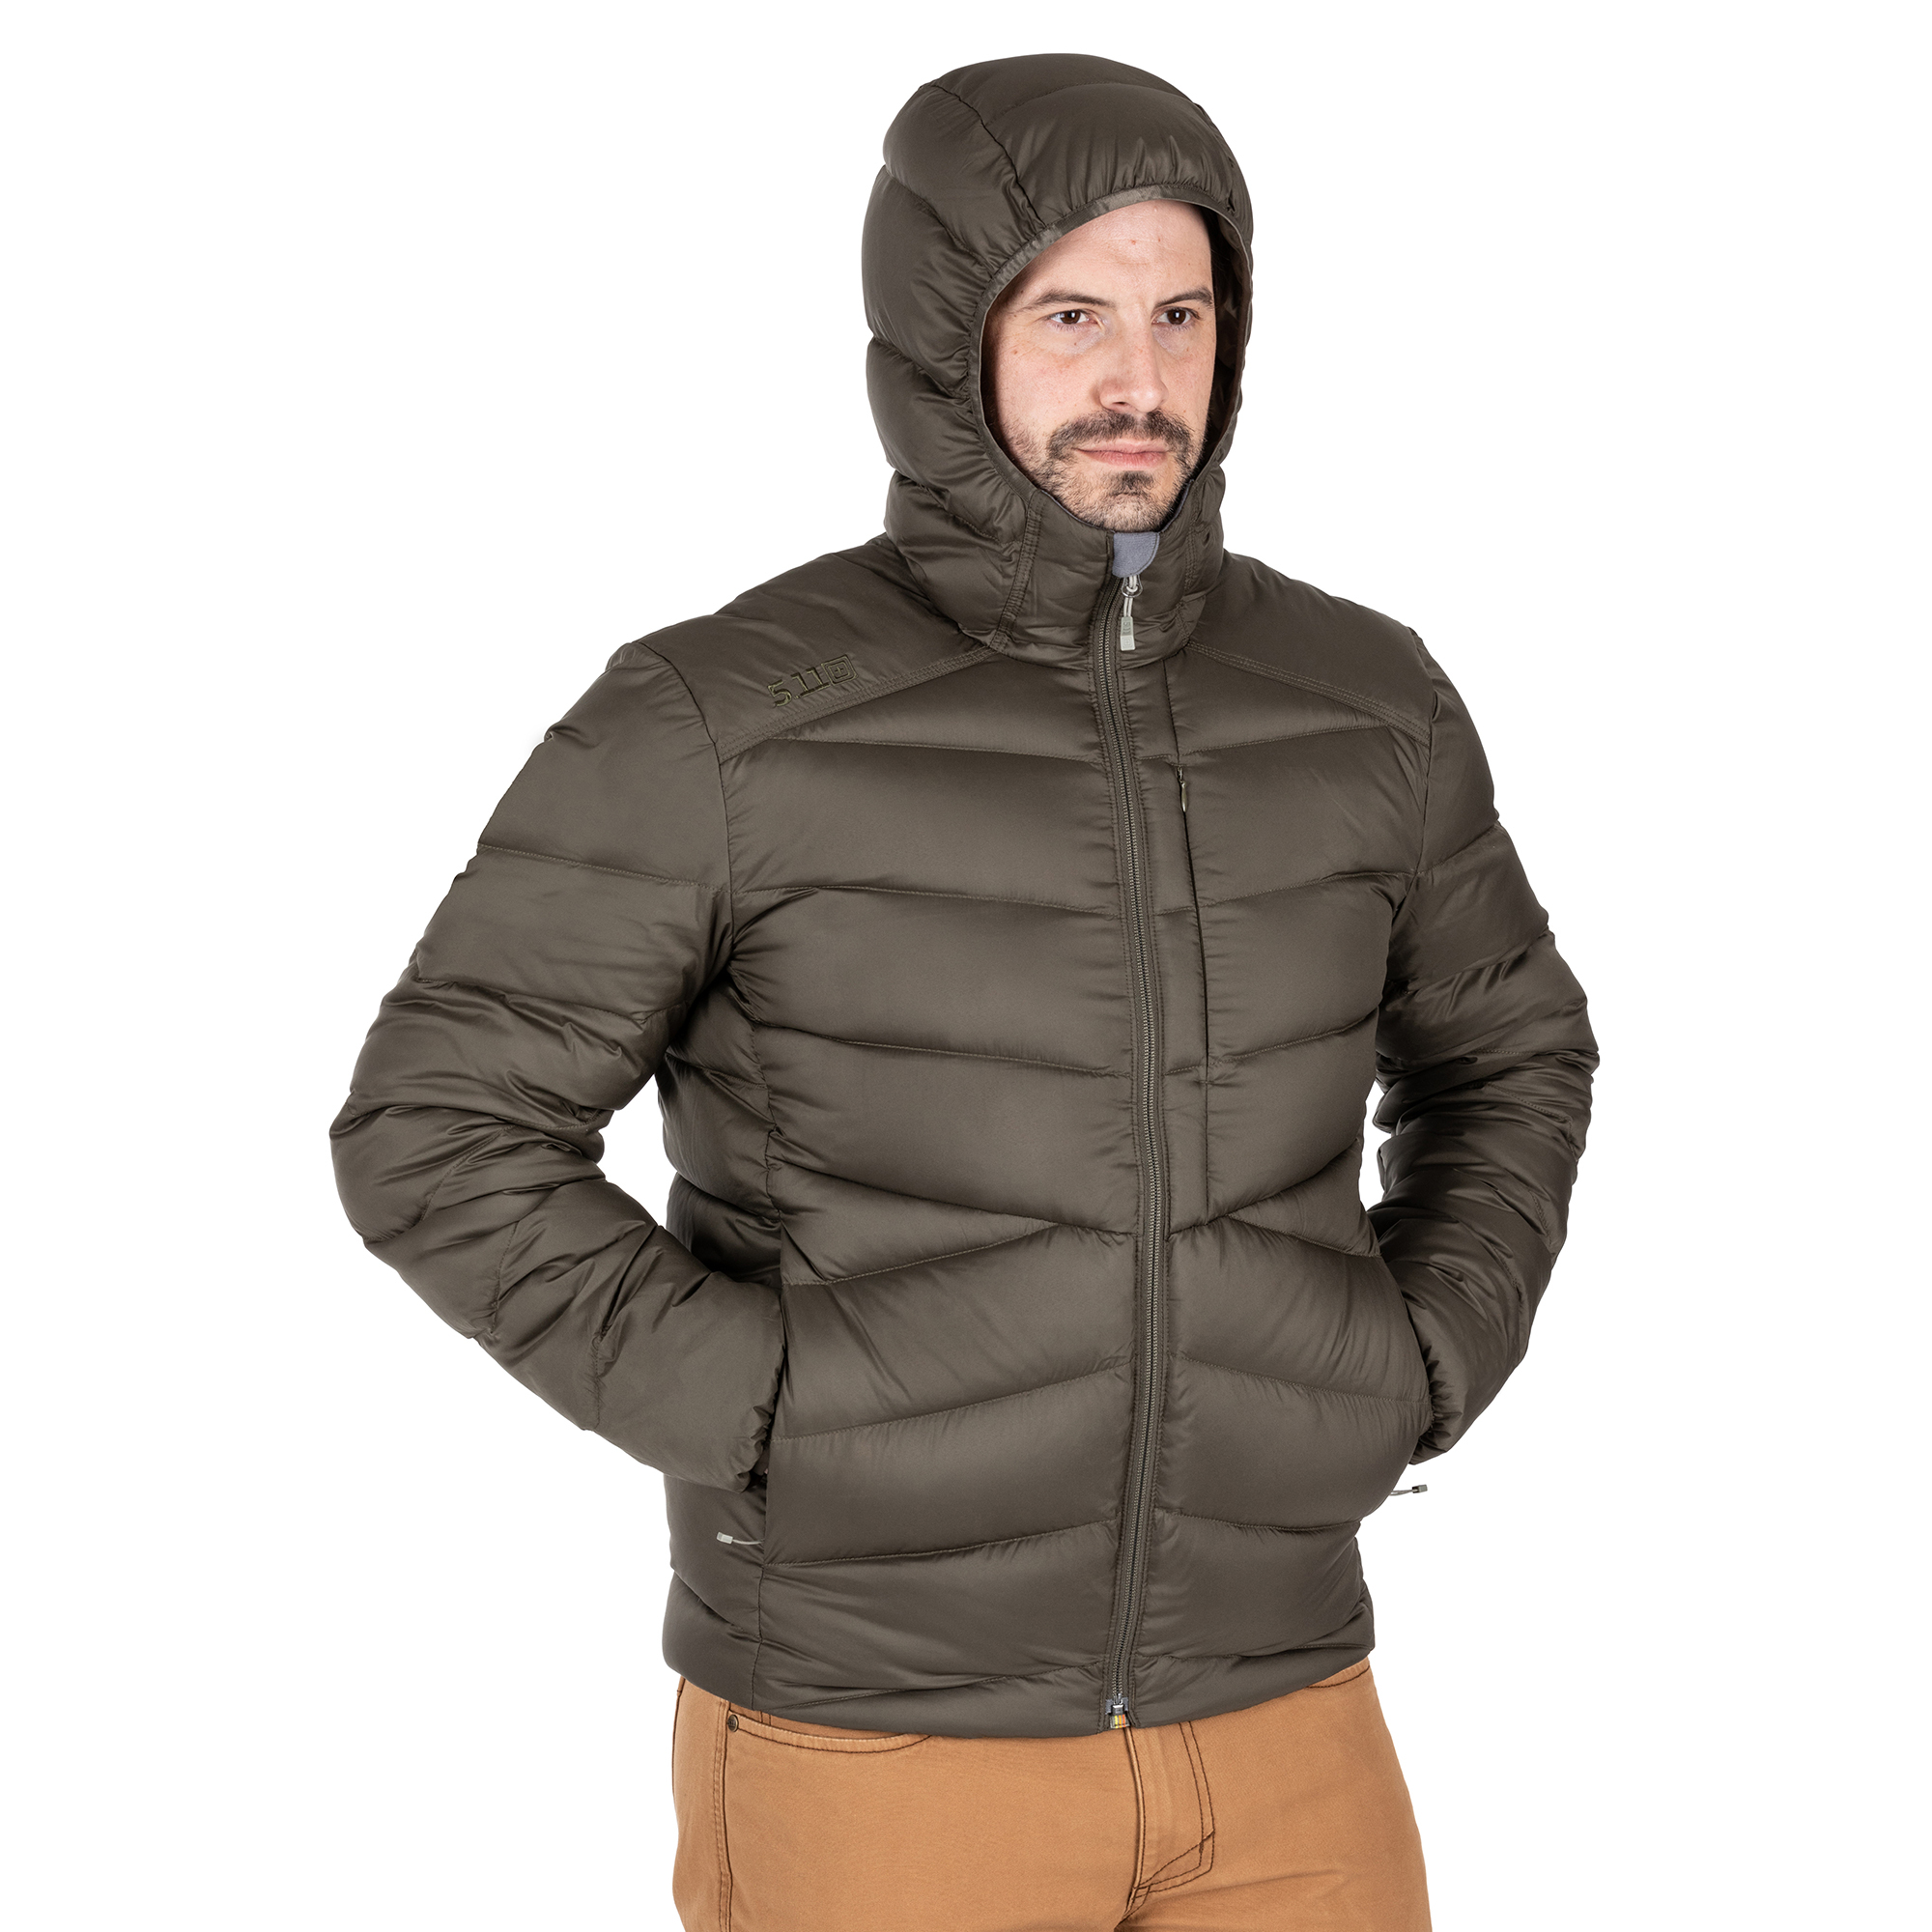 Пуховая куртка Acadia от 5.11 Tactical® на человеке, вид спереди в капюшоне, студийное фото